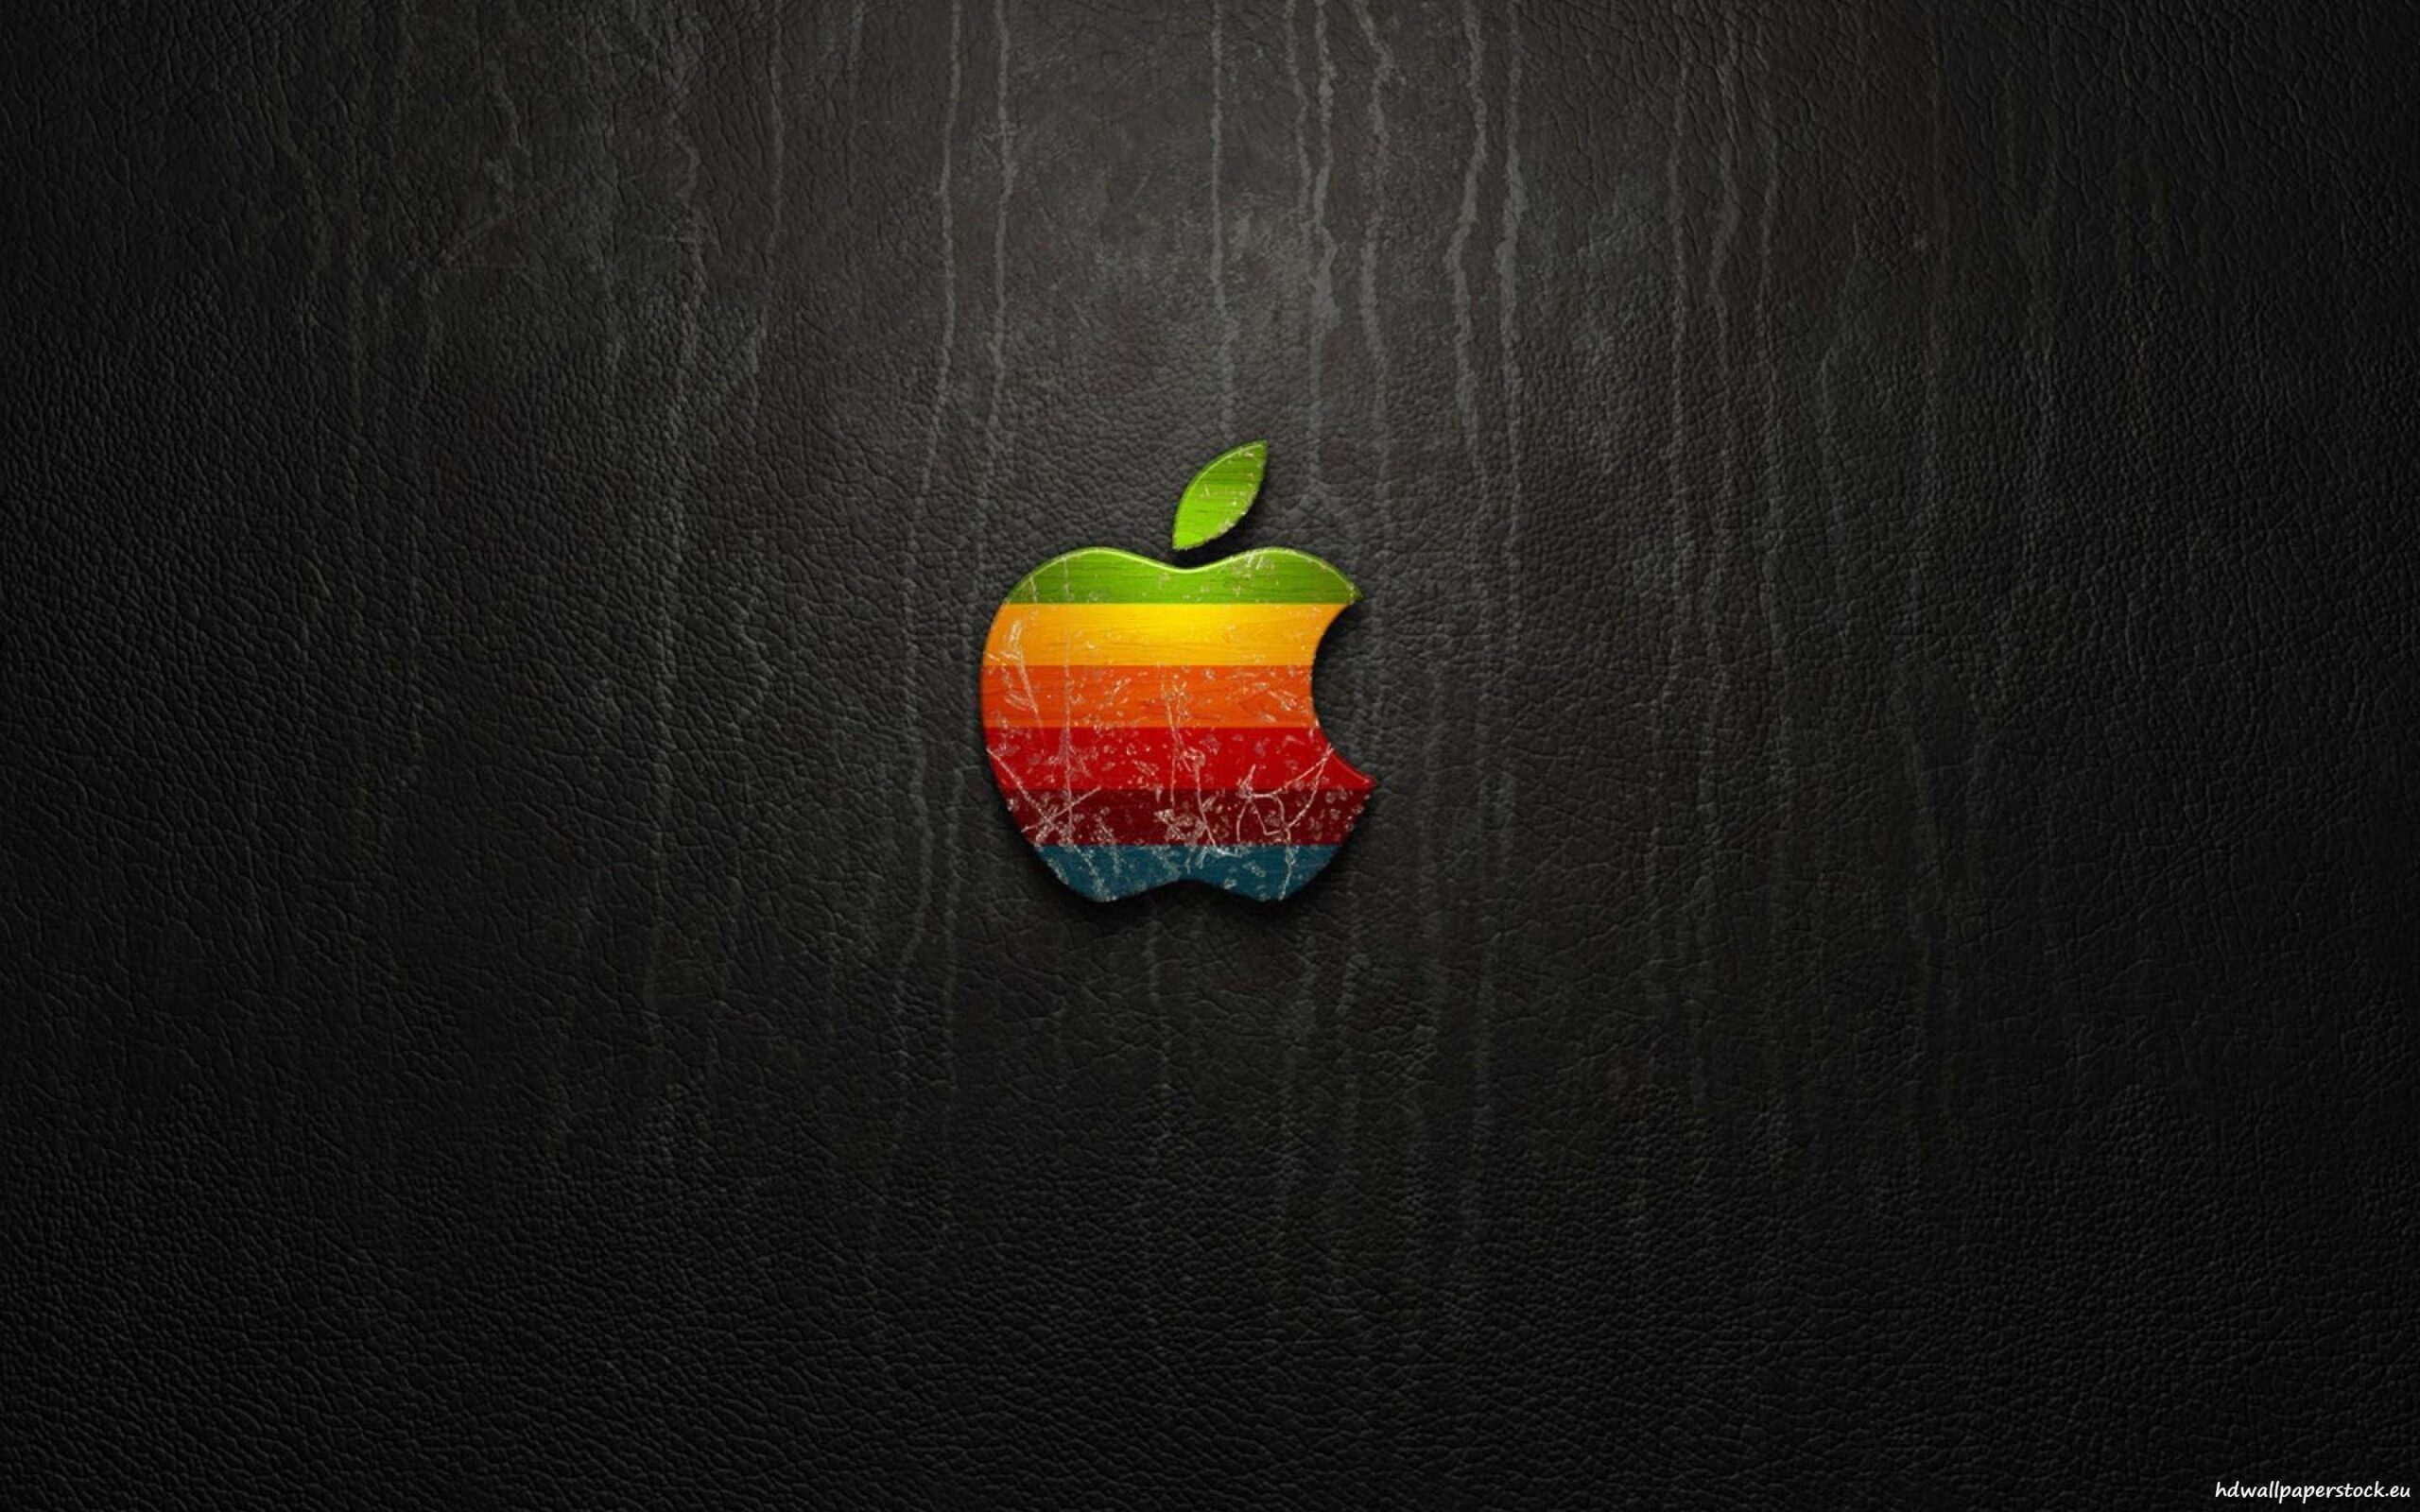 Apple 4K Ultra Hd Wallpapers